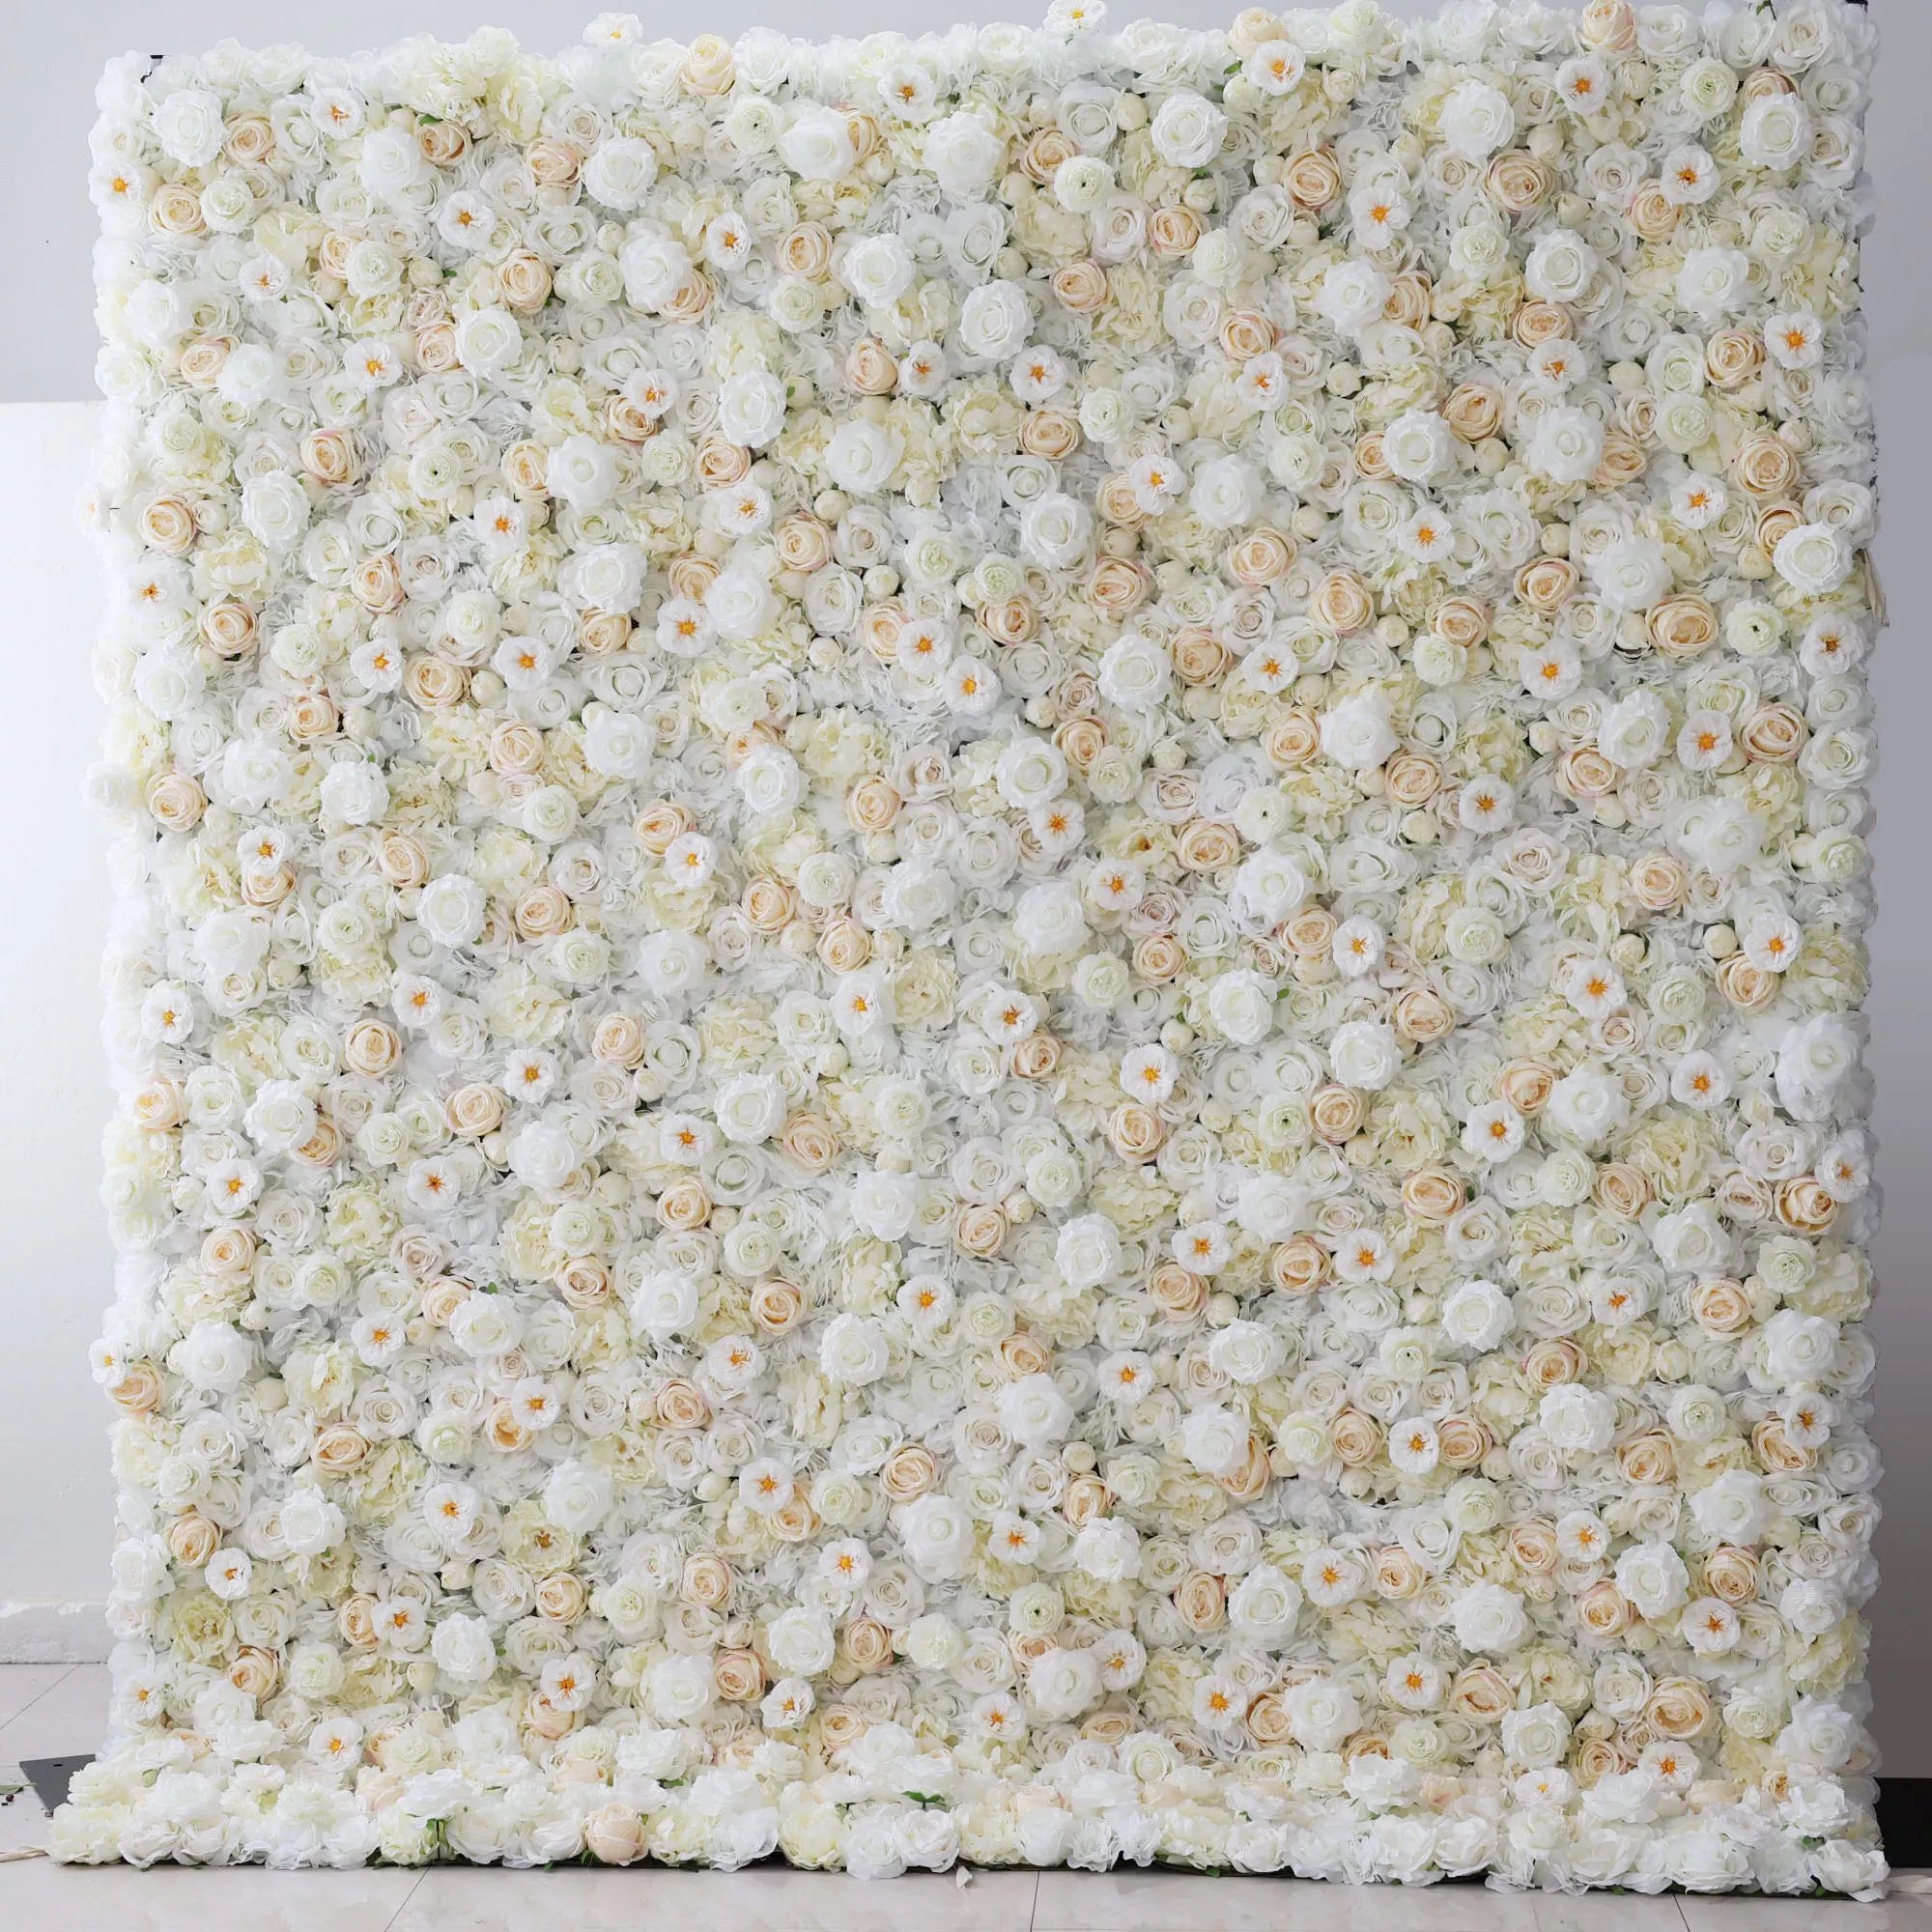 Valar Flowers Roll Up Tissu Artificiel Blanc, Crème et Champagne Fleur Mur Toile de Fond de Mariage, Décor de Fête Florale, Photographie d'Événement-VF-263 